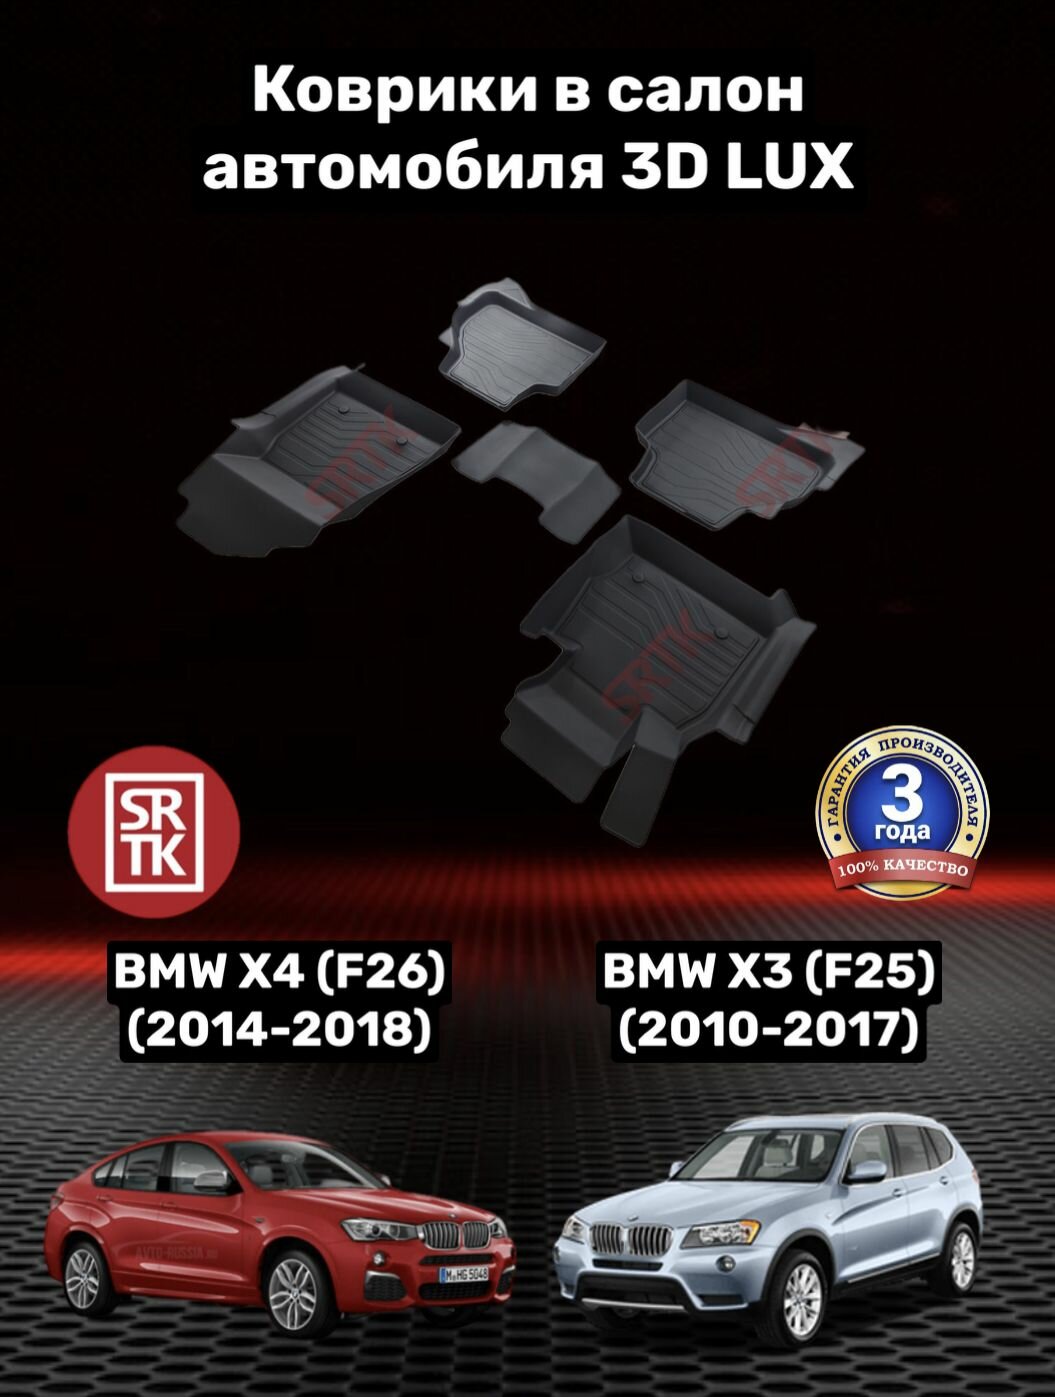 Коврики резиновые БМВ Х3 Ф25 (2010-2017)/Х4 Ф26 (2014-2018)/BMW X3 F25/X4 F26 3D LUX SRTK (Саранск) комплект в салон